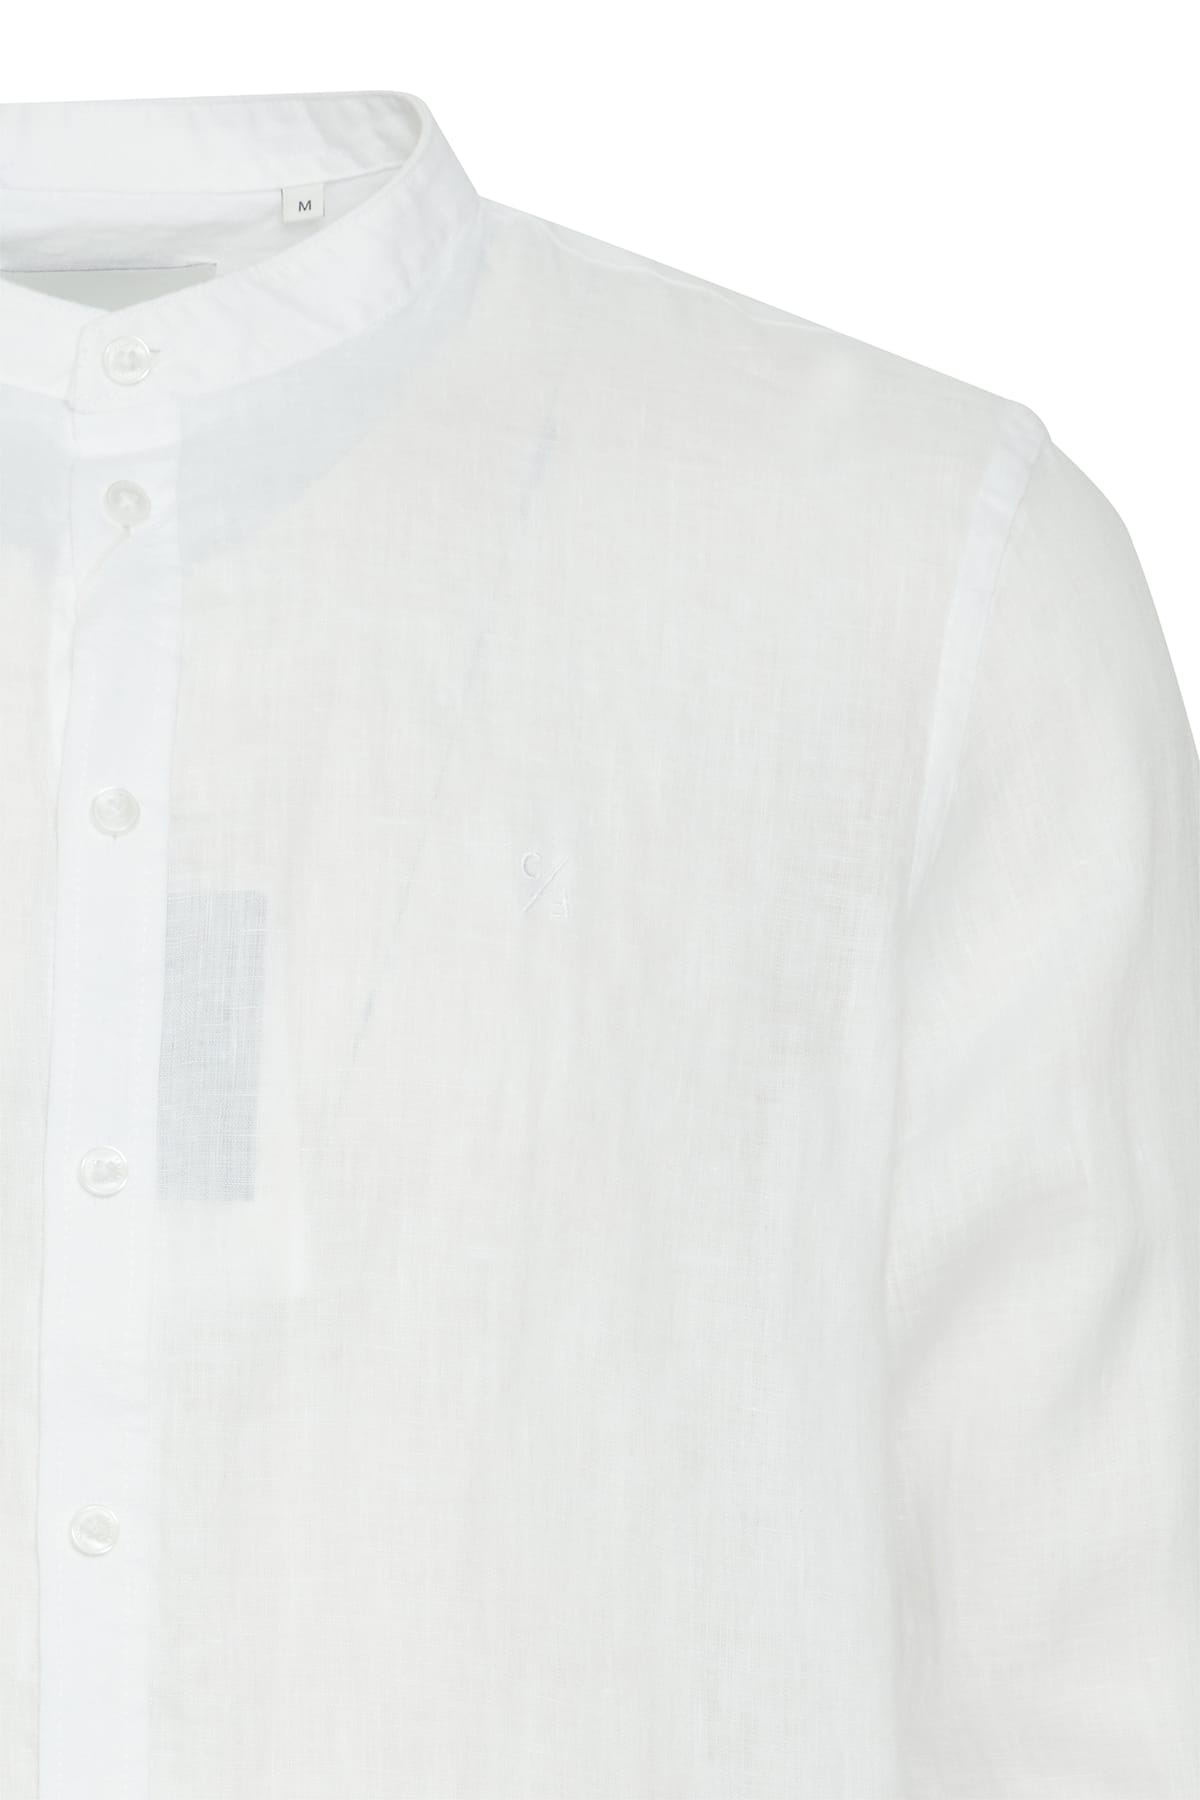 Hemd Anton LS CC linen shirt Bright White Hemd Casual Friday 